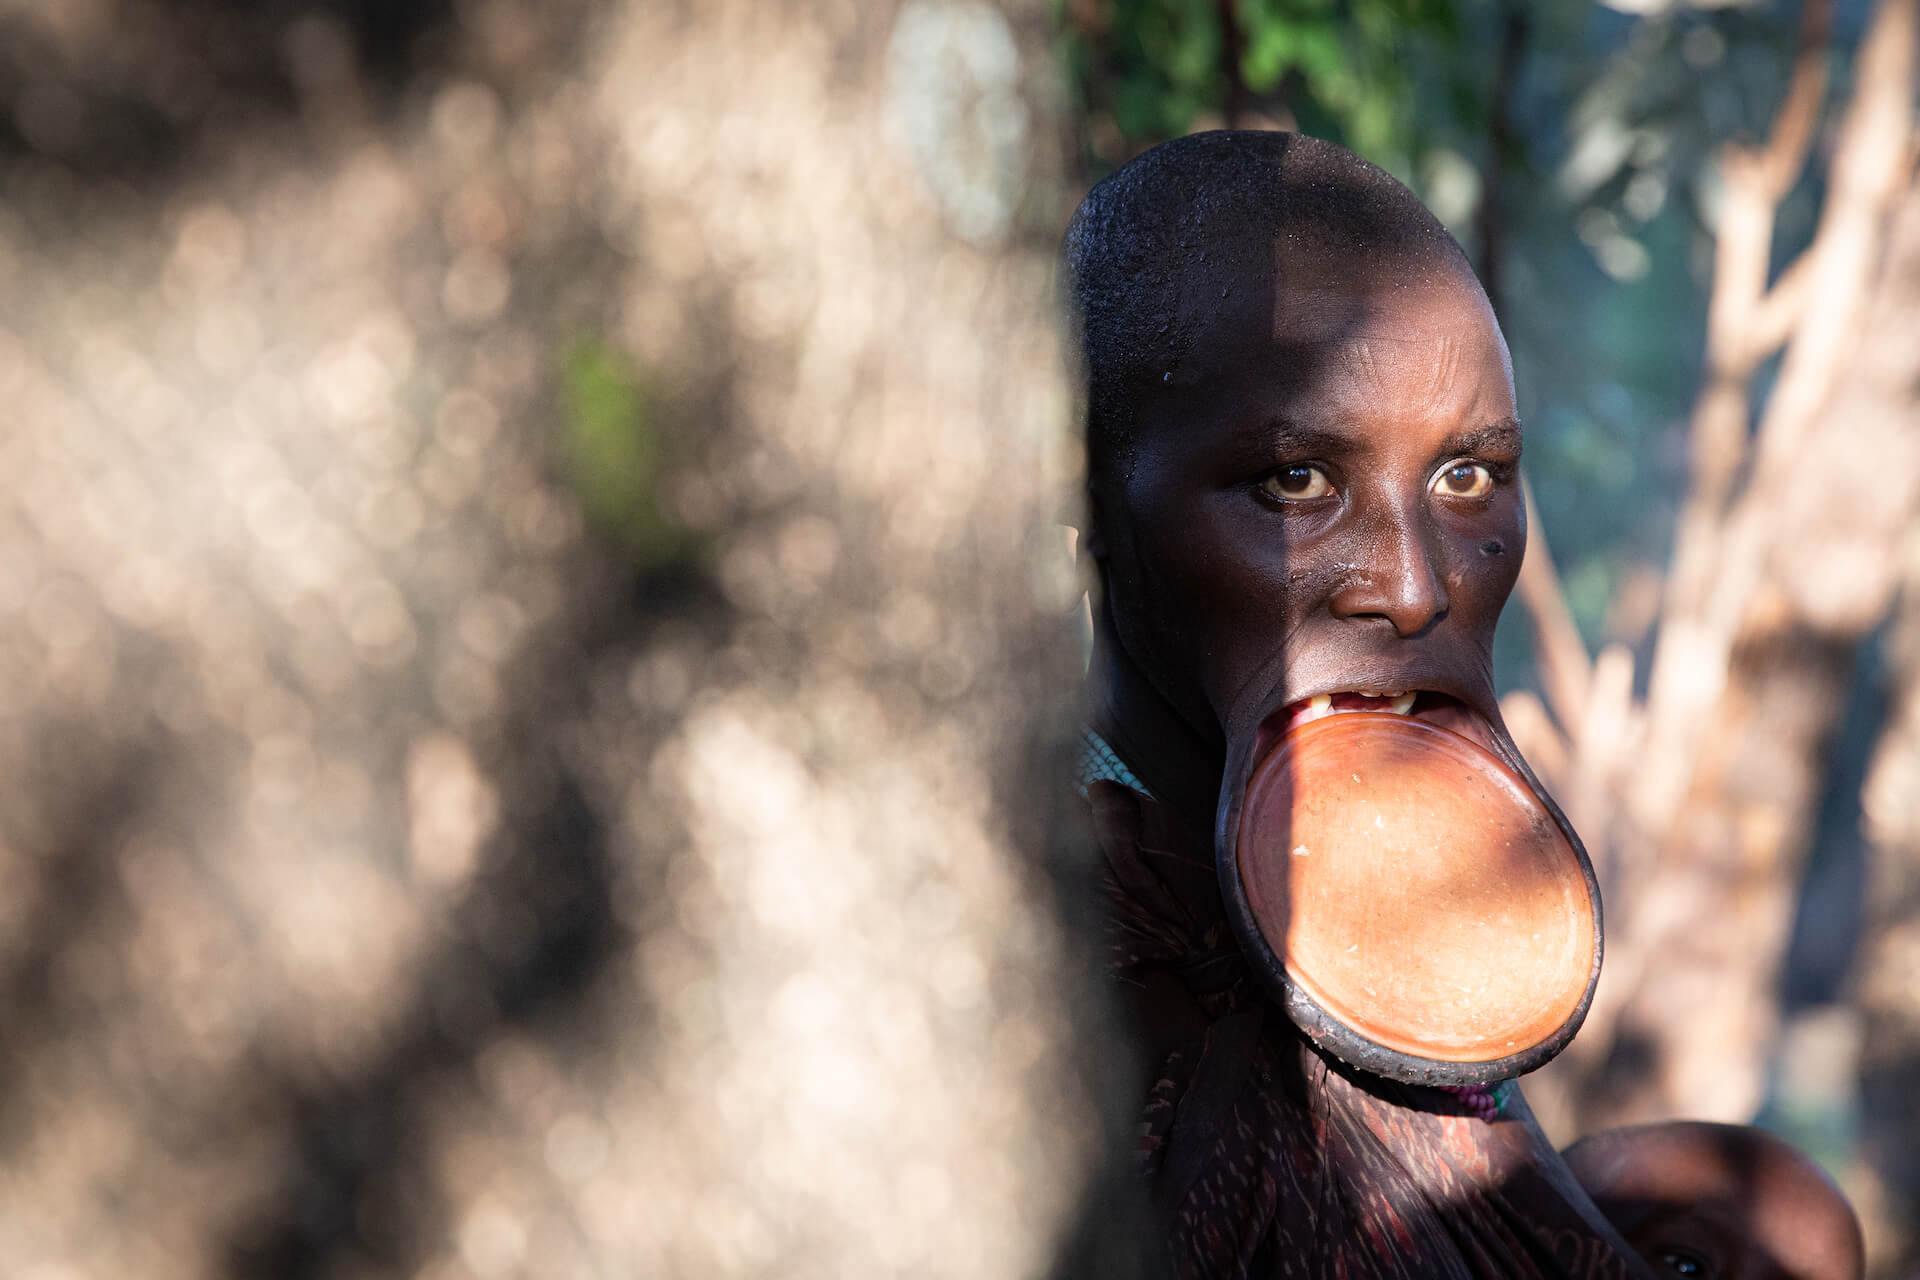 Žena kmene Suri s talířkem ve rtu - Etiopie | Planeta lidí | David Švejnoha